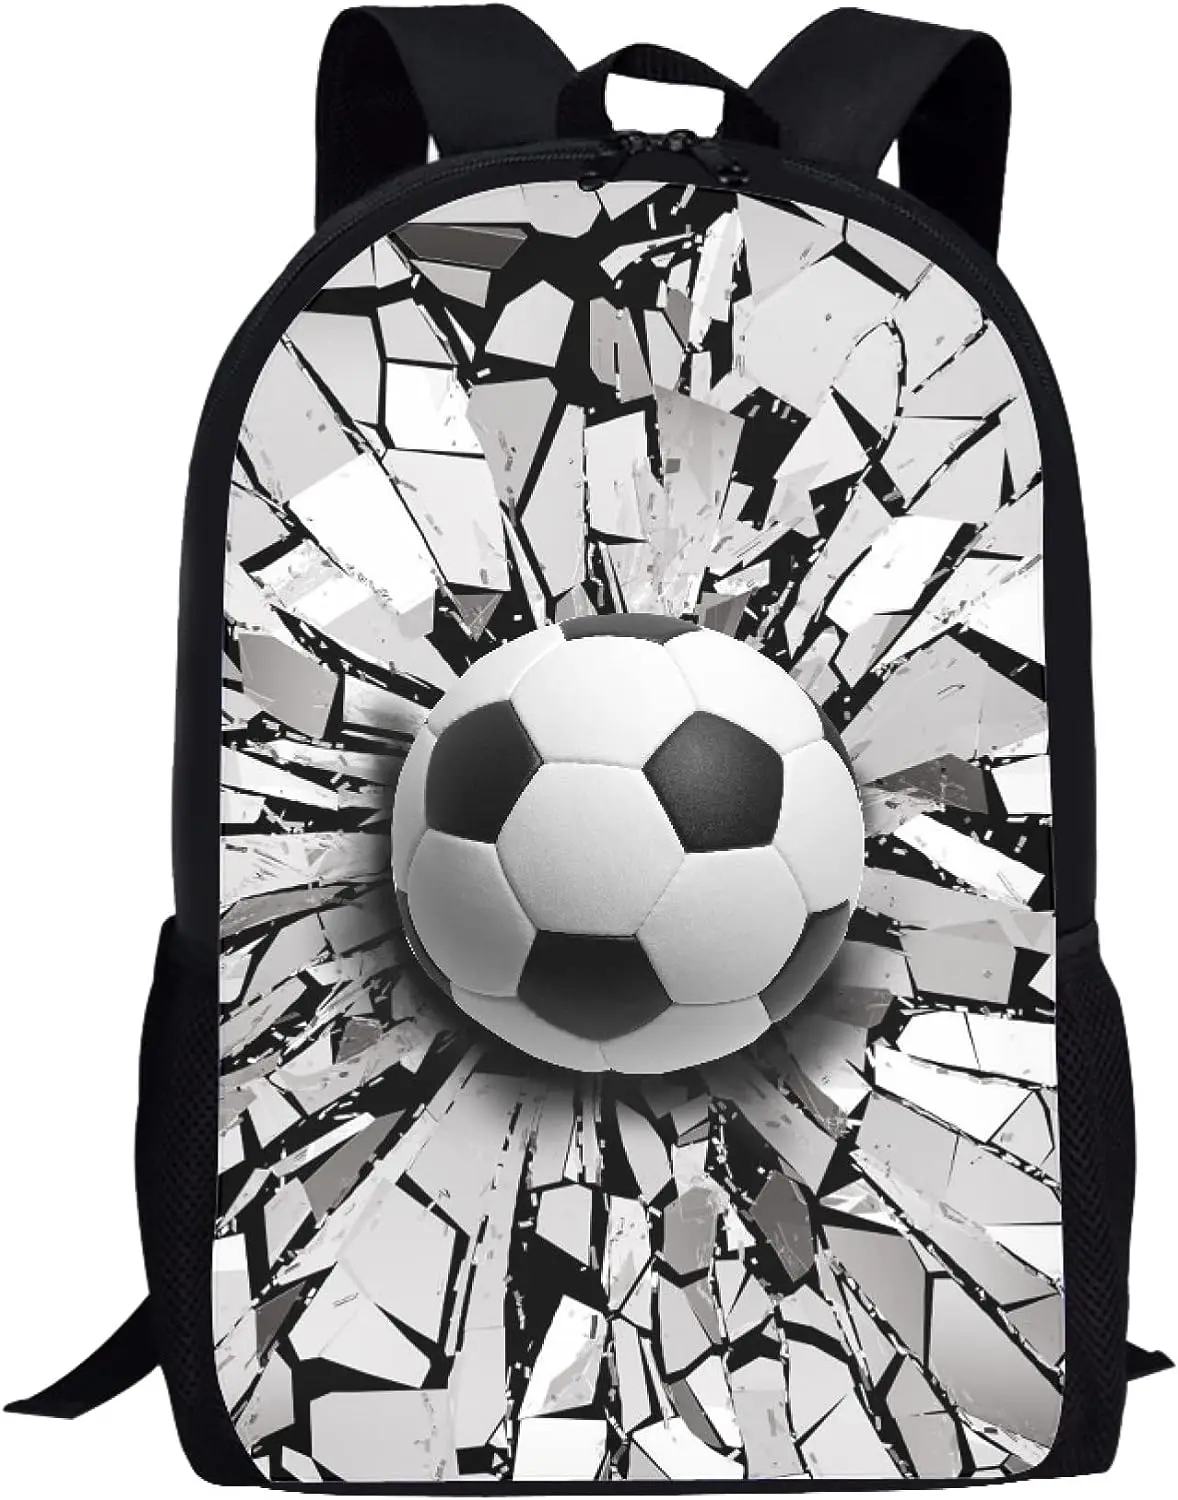 Boys Soccer Pattern Backpack